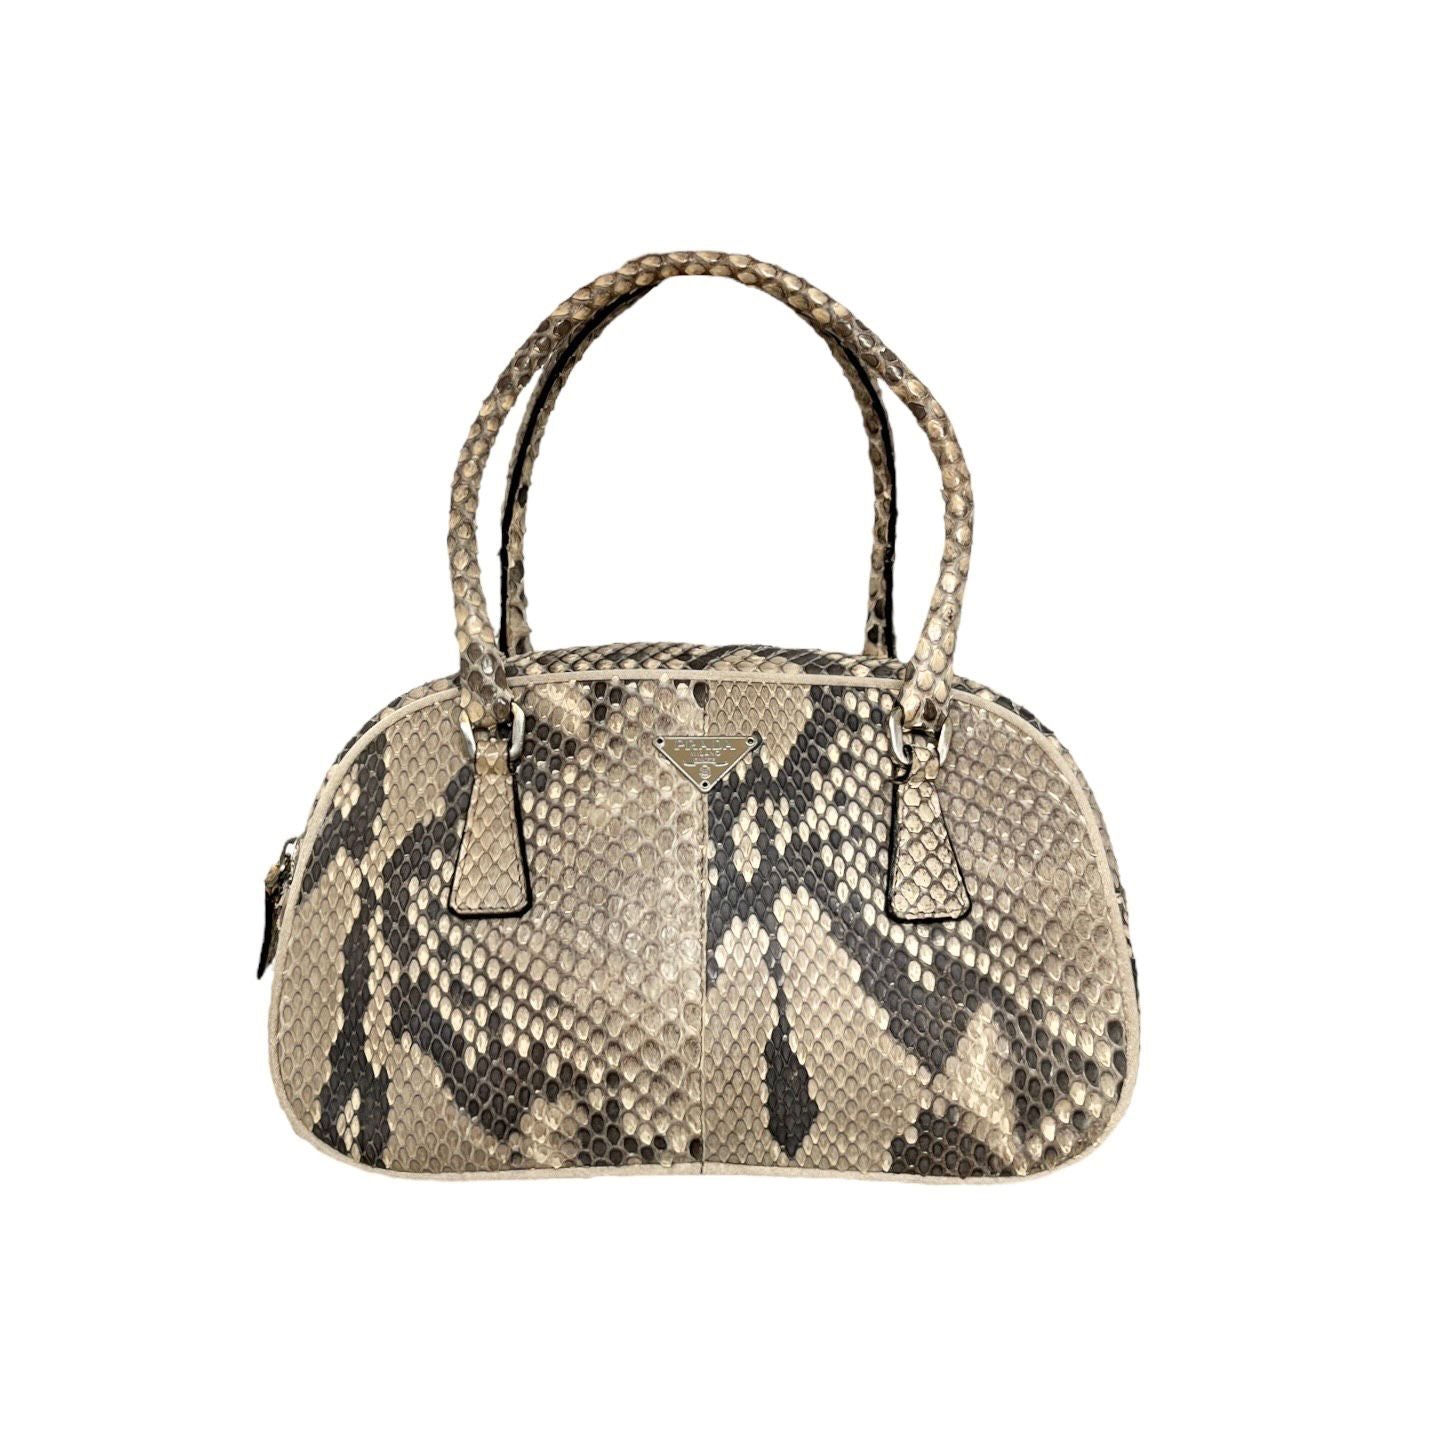 LV Bag with Snake Skin Full set